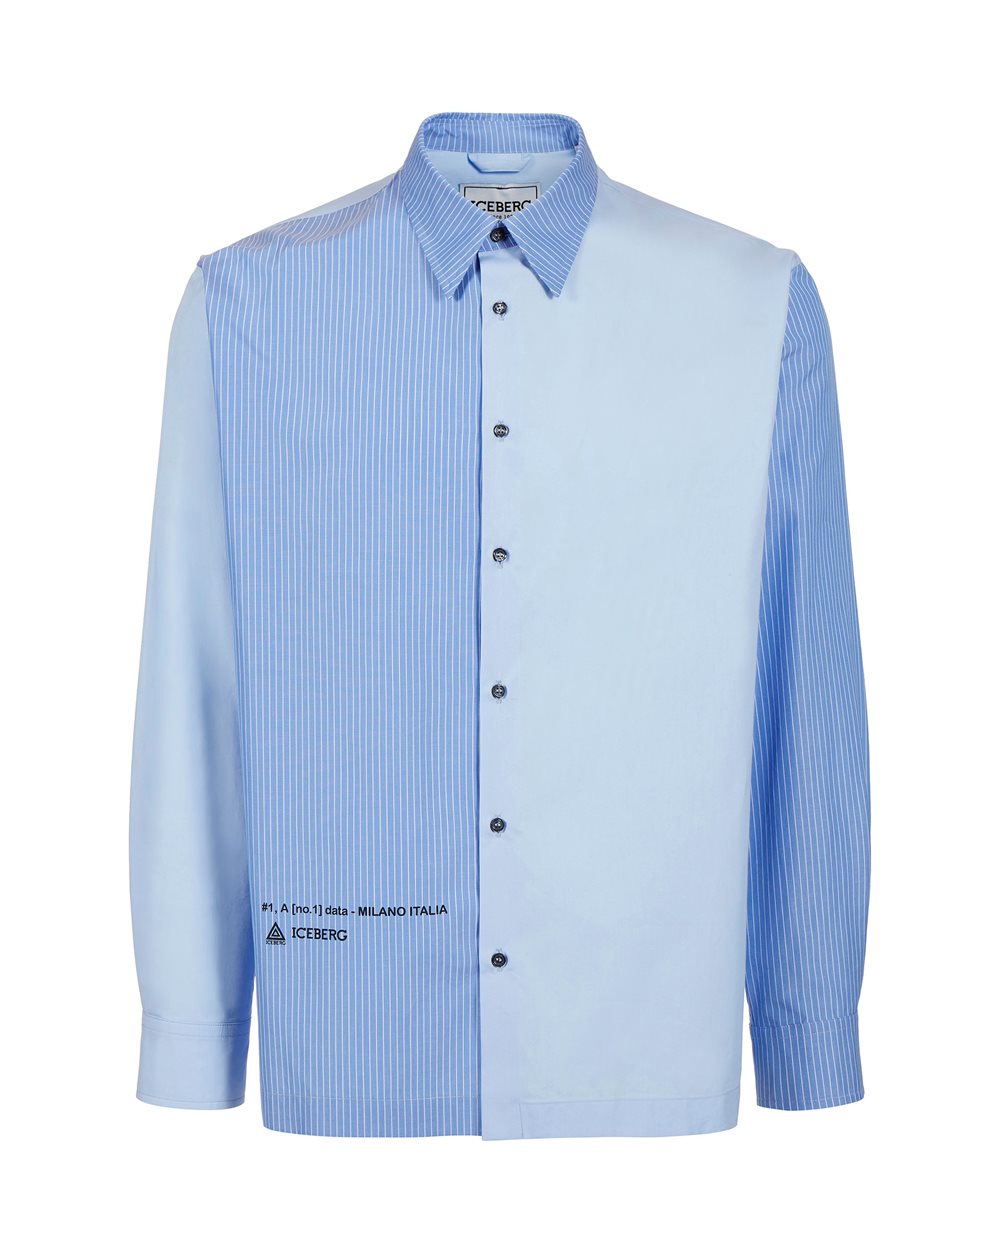 Camicia celeste con logo - Uomo | Iceberg - Official Website